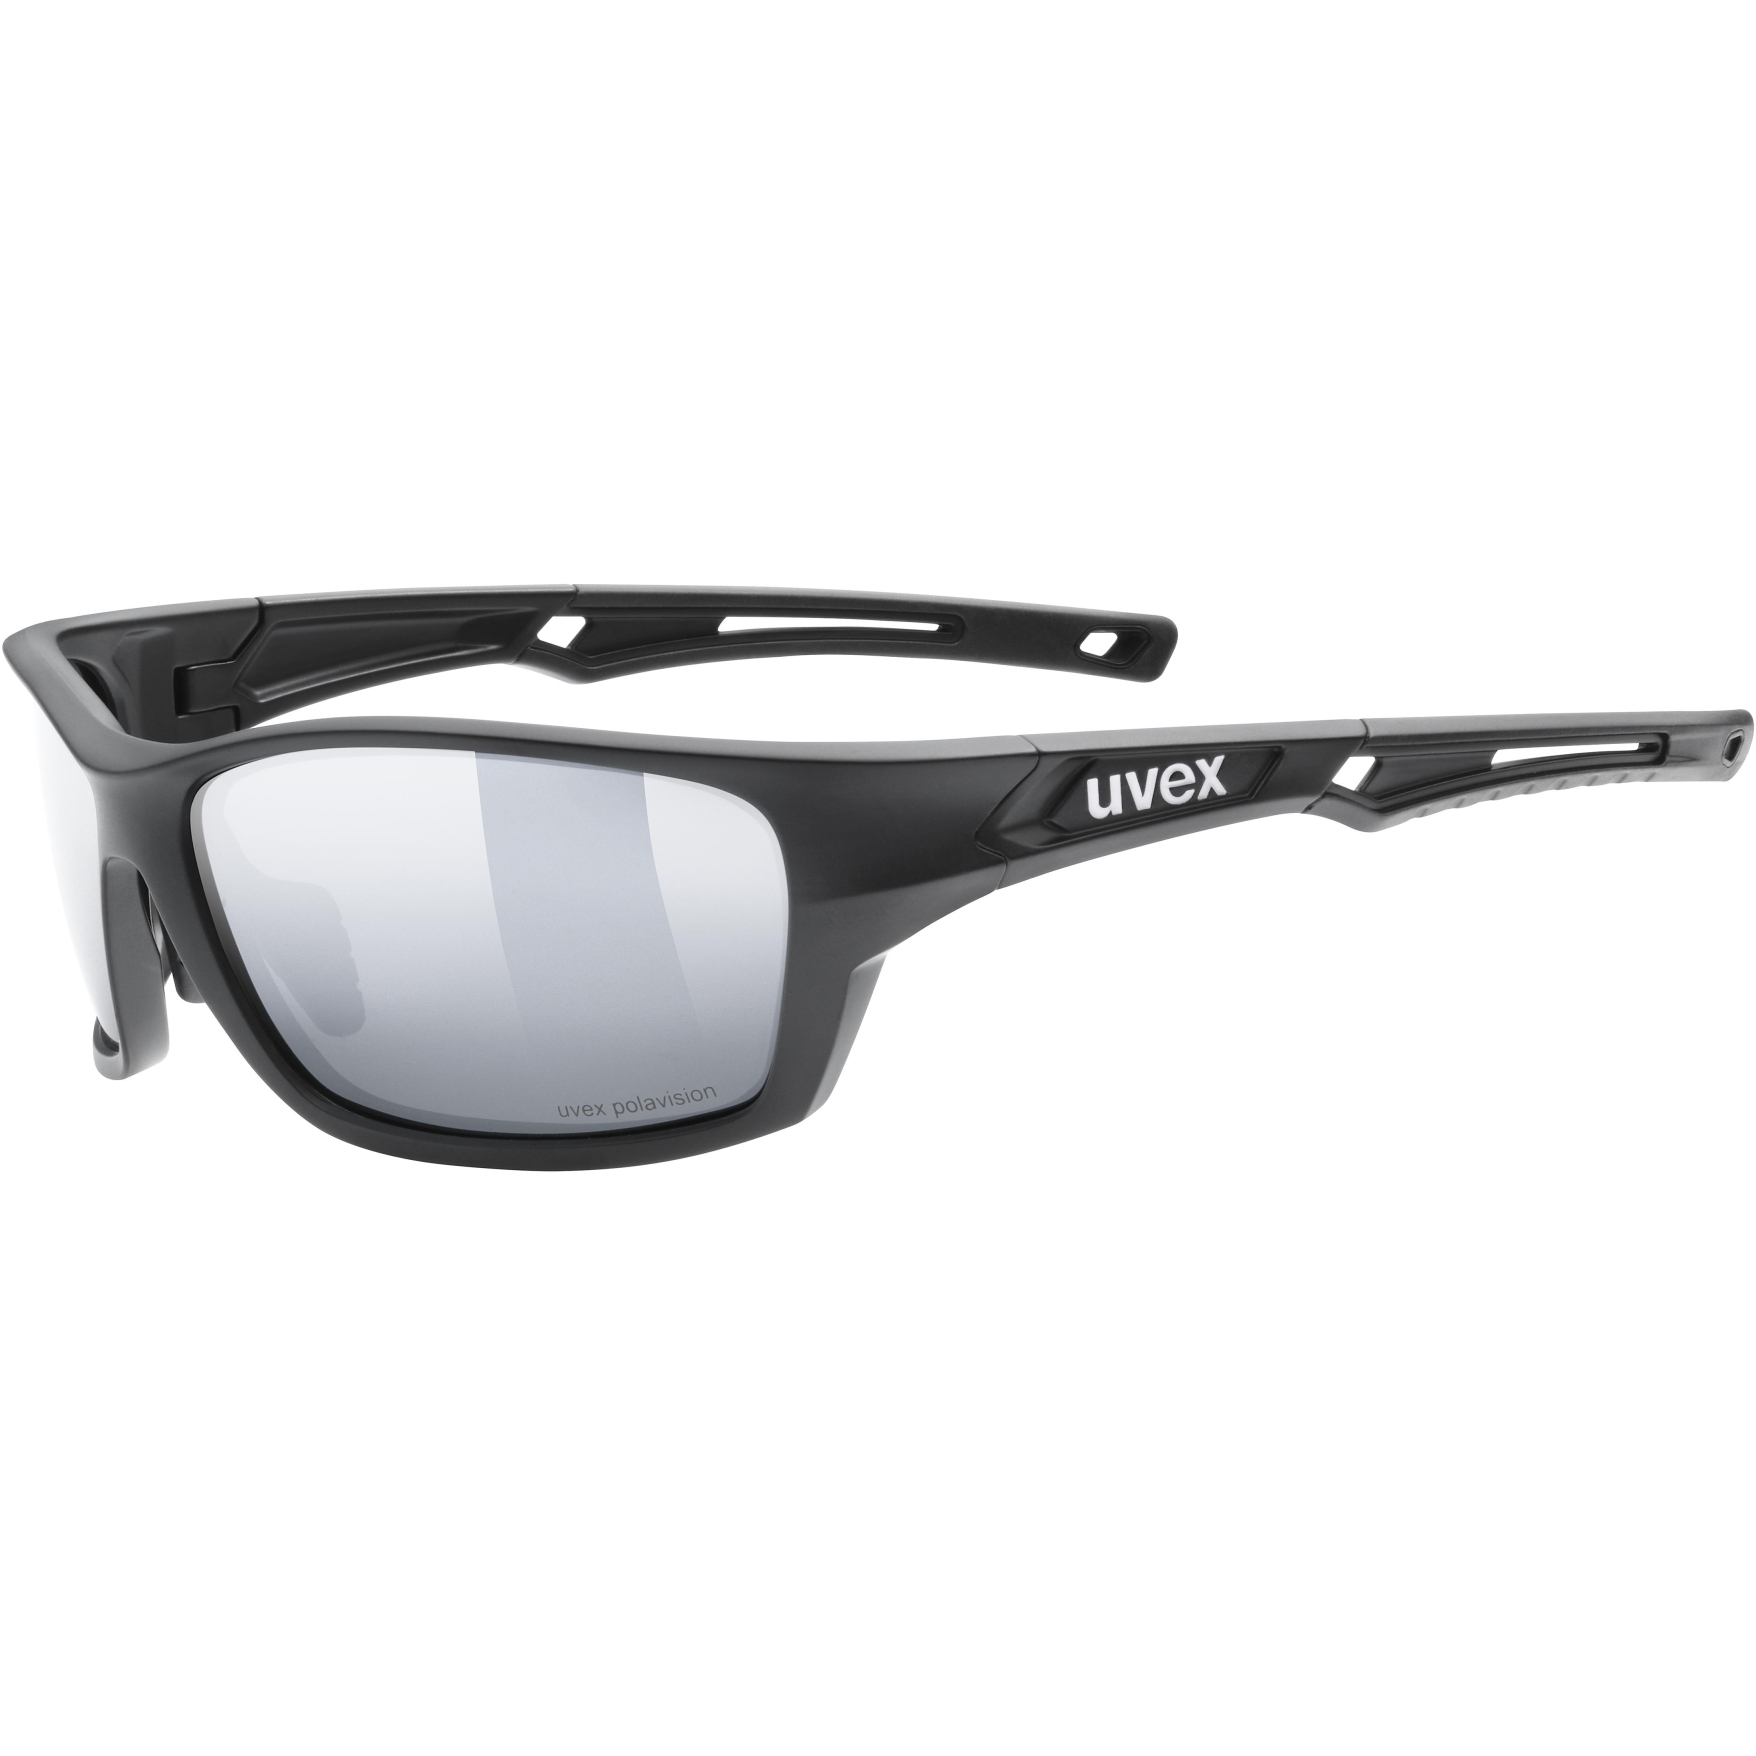 Produktbild von Uvex sportstyle 232 P Brille - black matt/polavision mirror silver